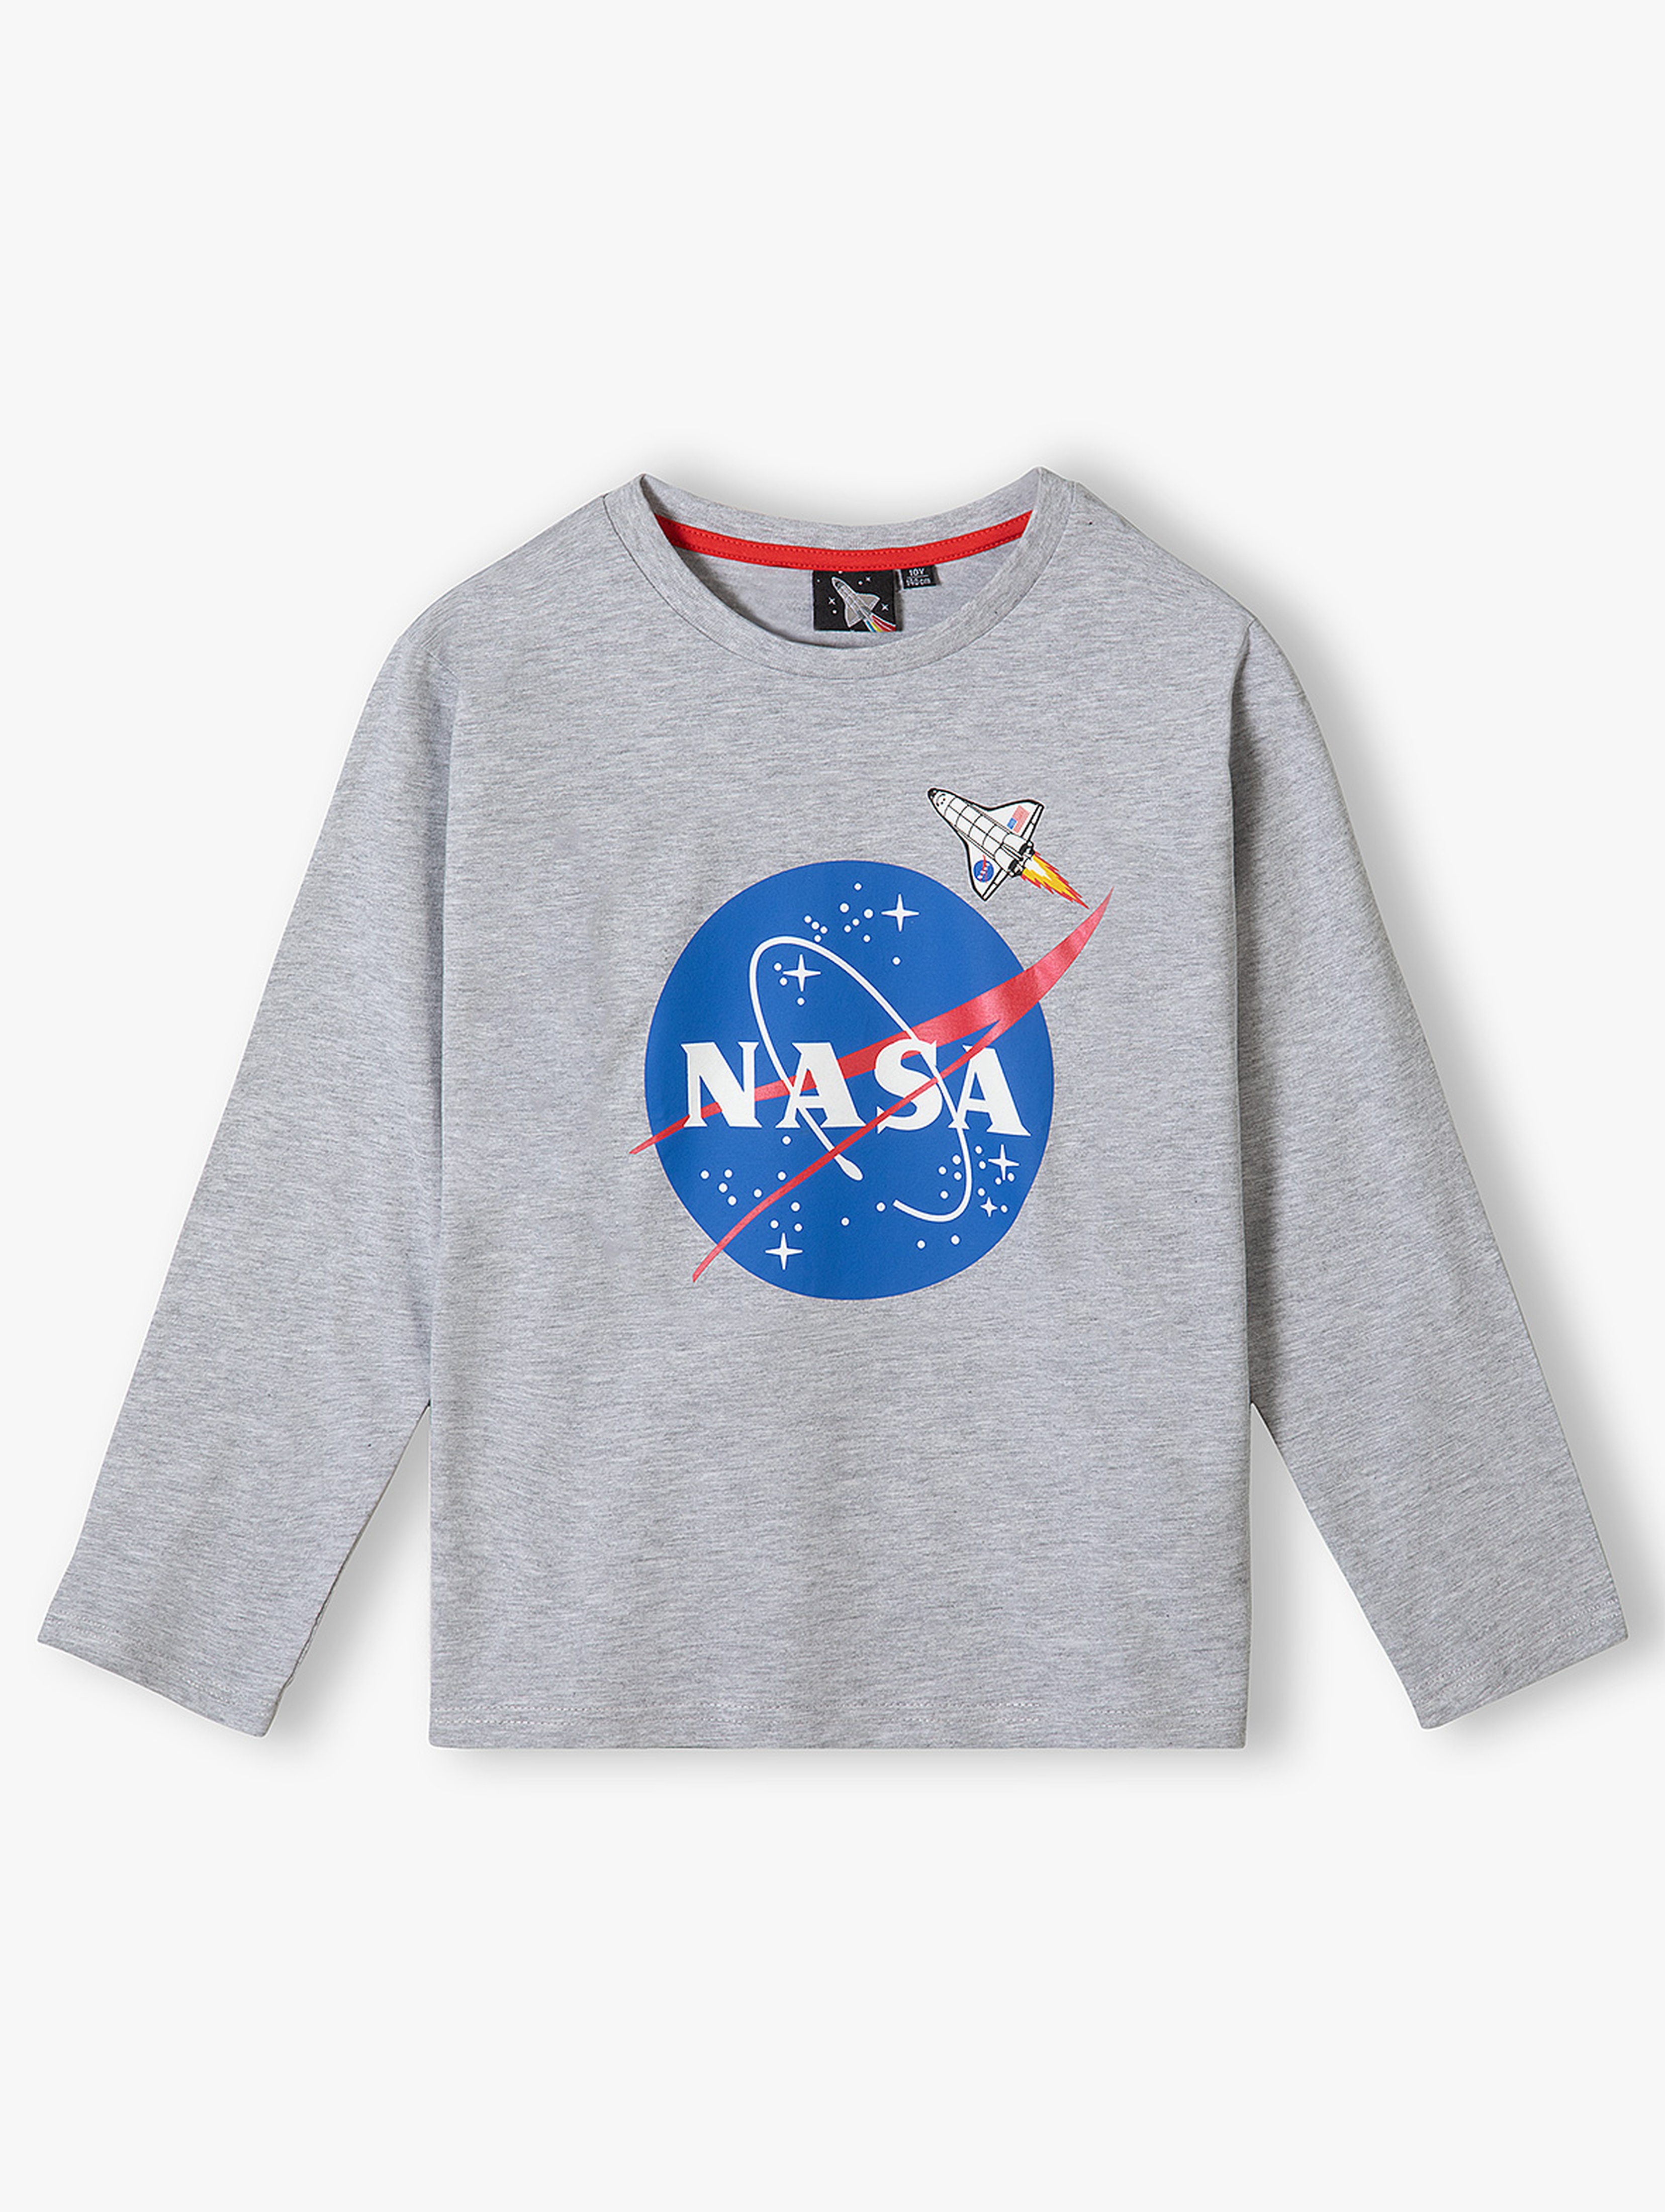 Bluzka chłopięca dzianinowa szara NASA